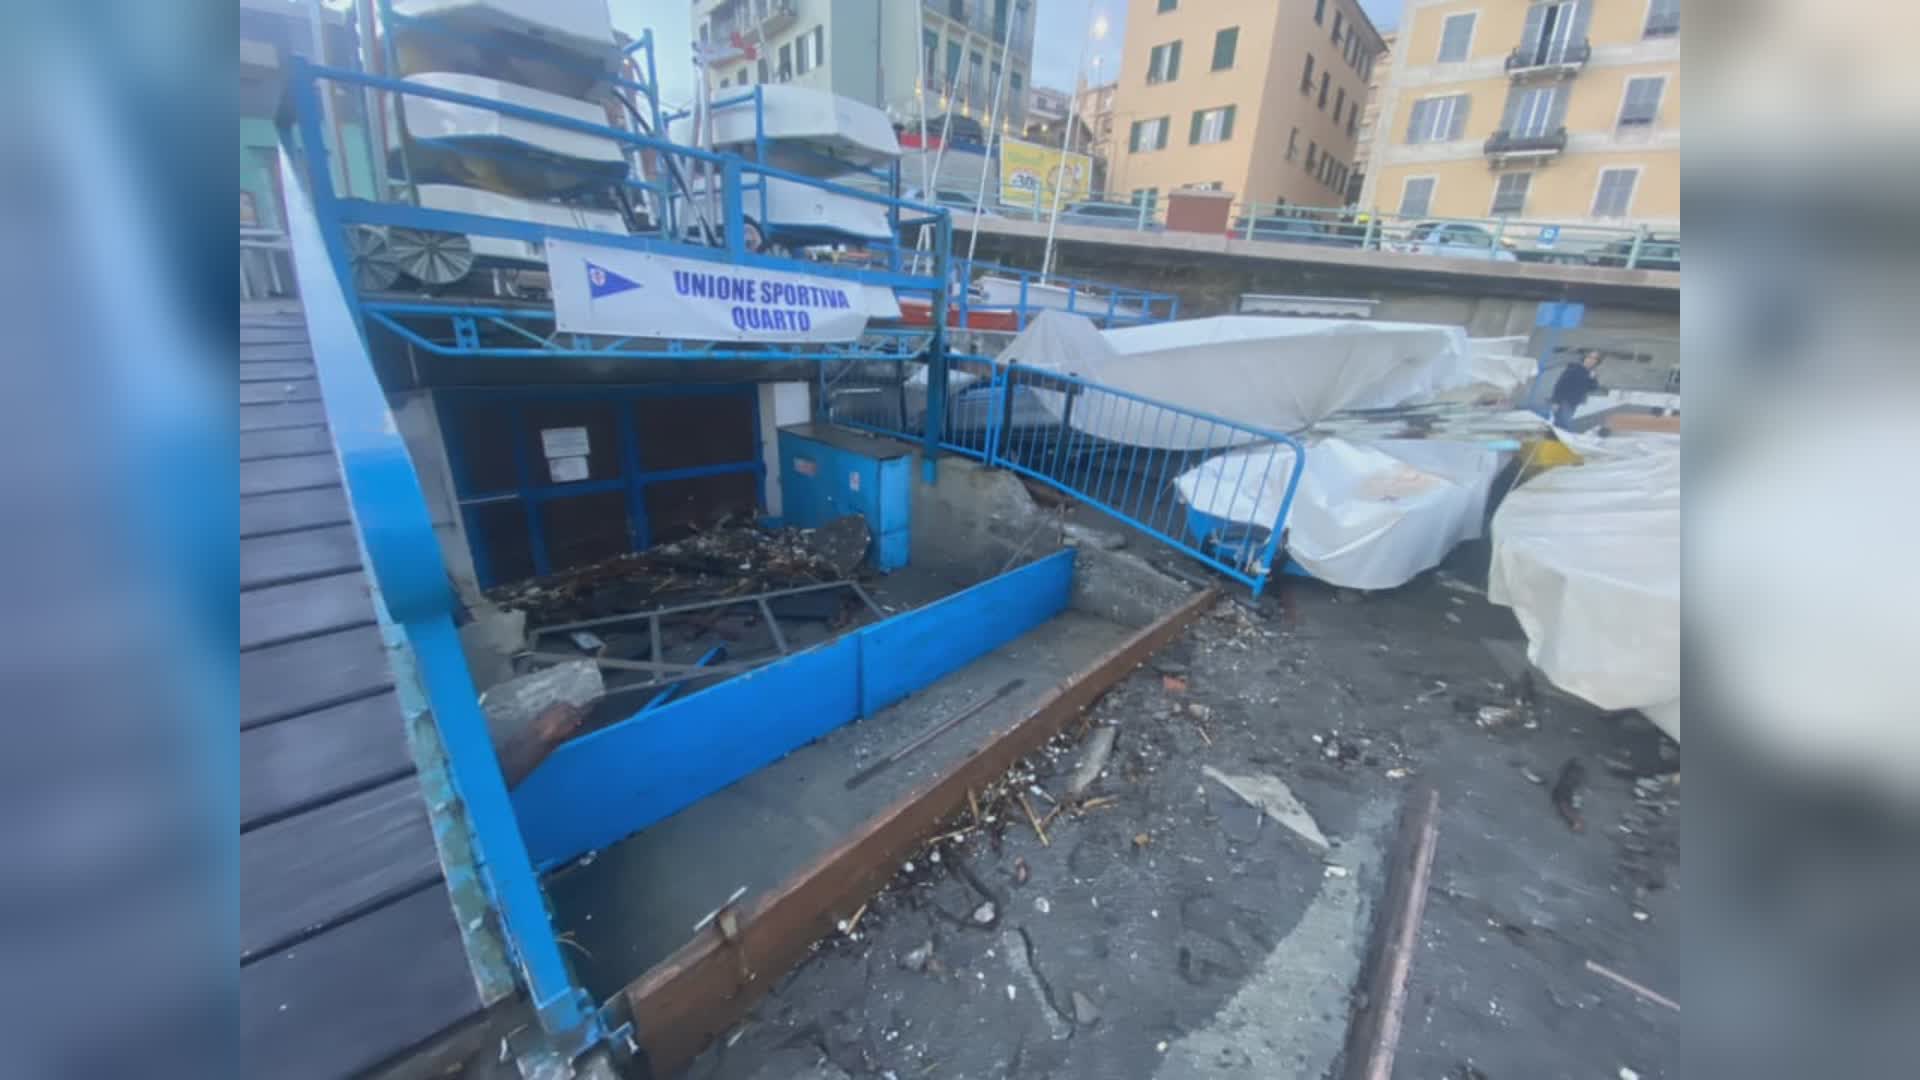 Genova, i circoli sportivi del levante chiedono aiuto dopo i danni della mareggiata